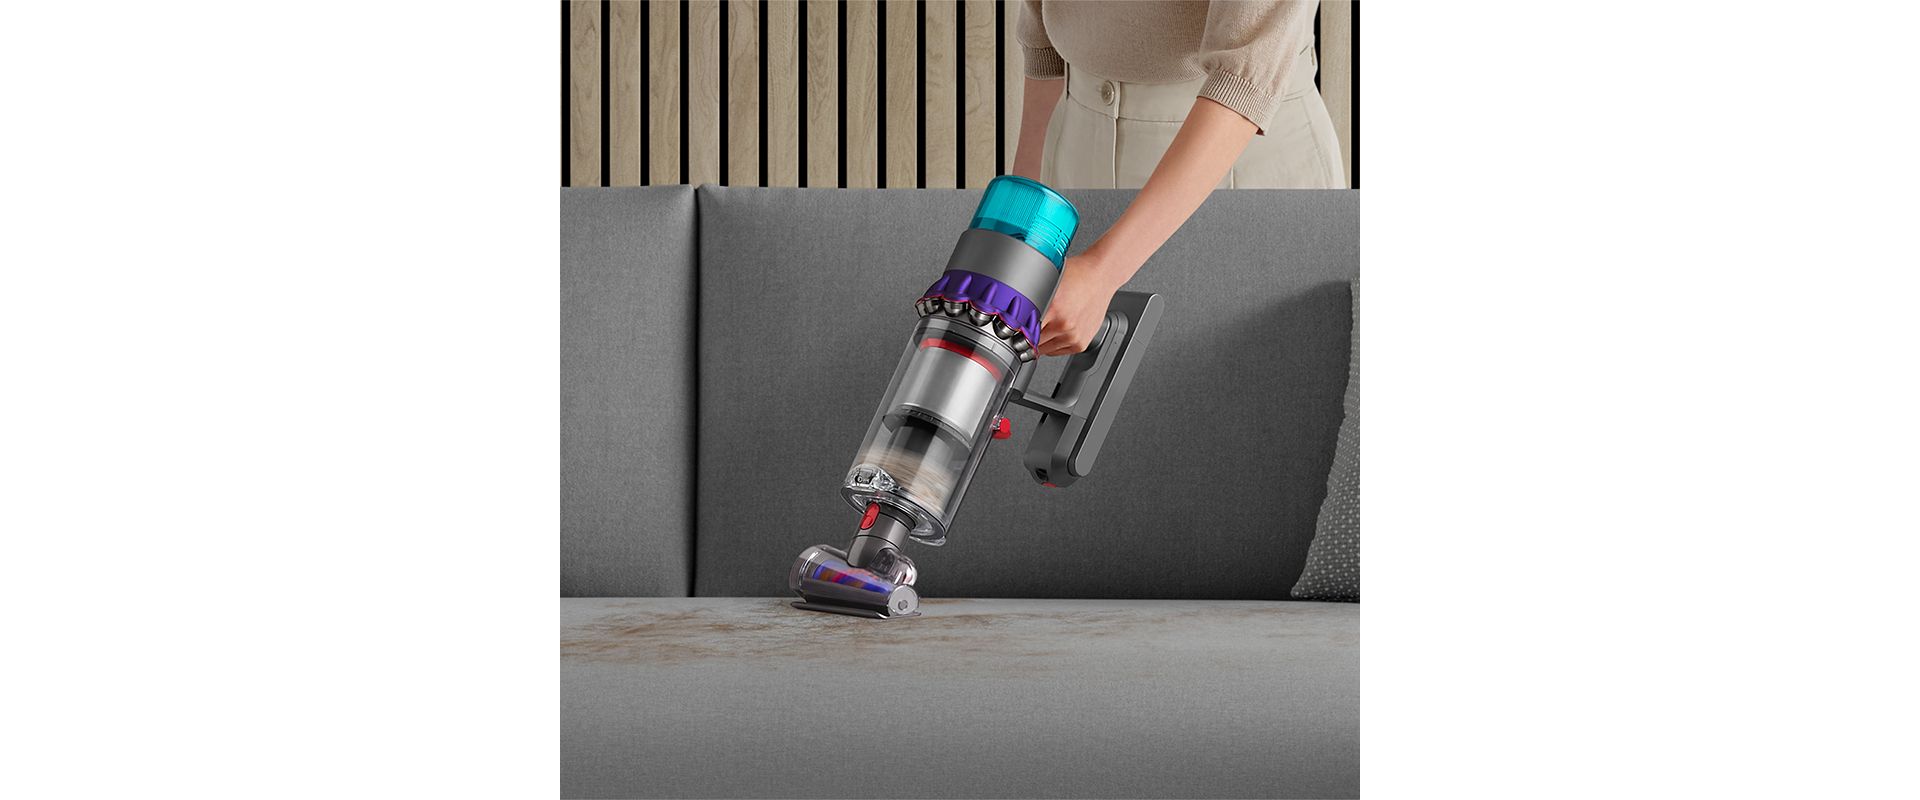 De-tangling Hair screw tool vacuuming a sofa.